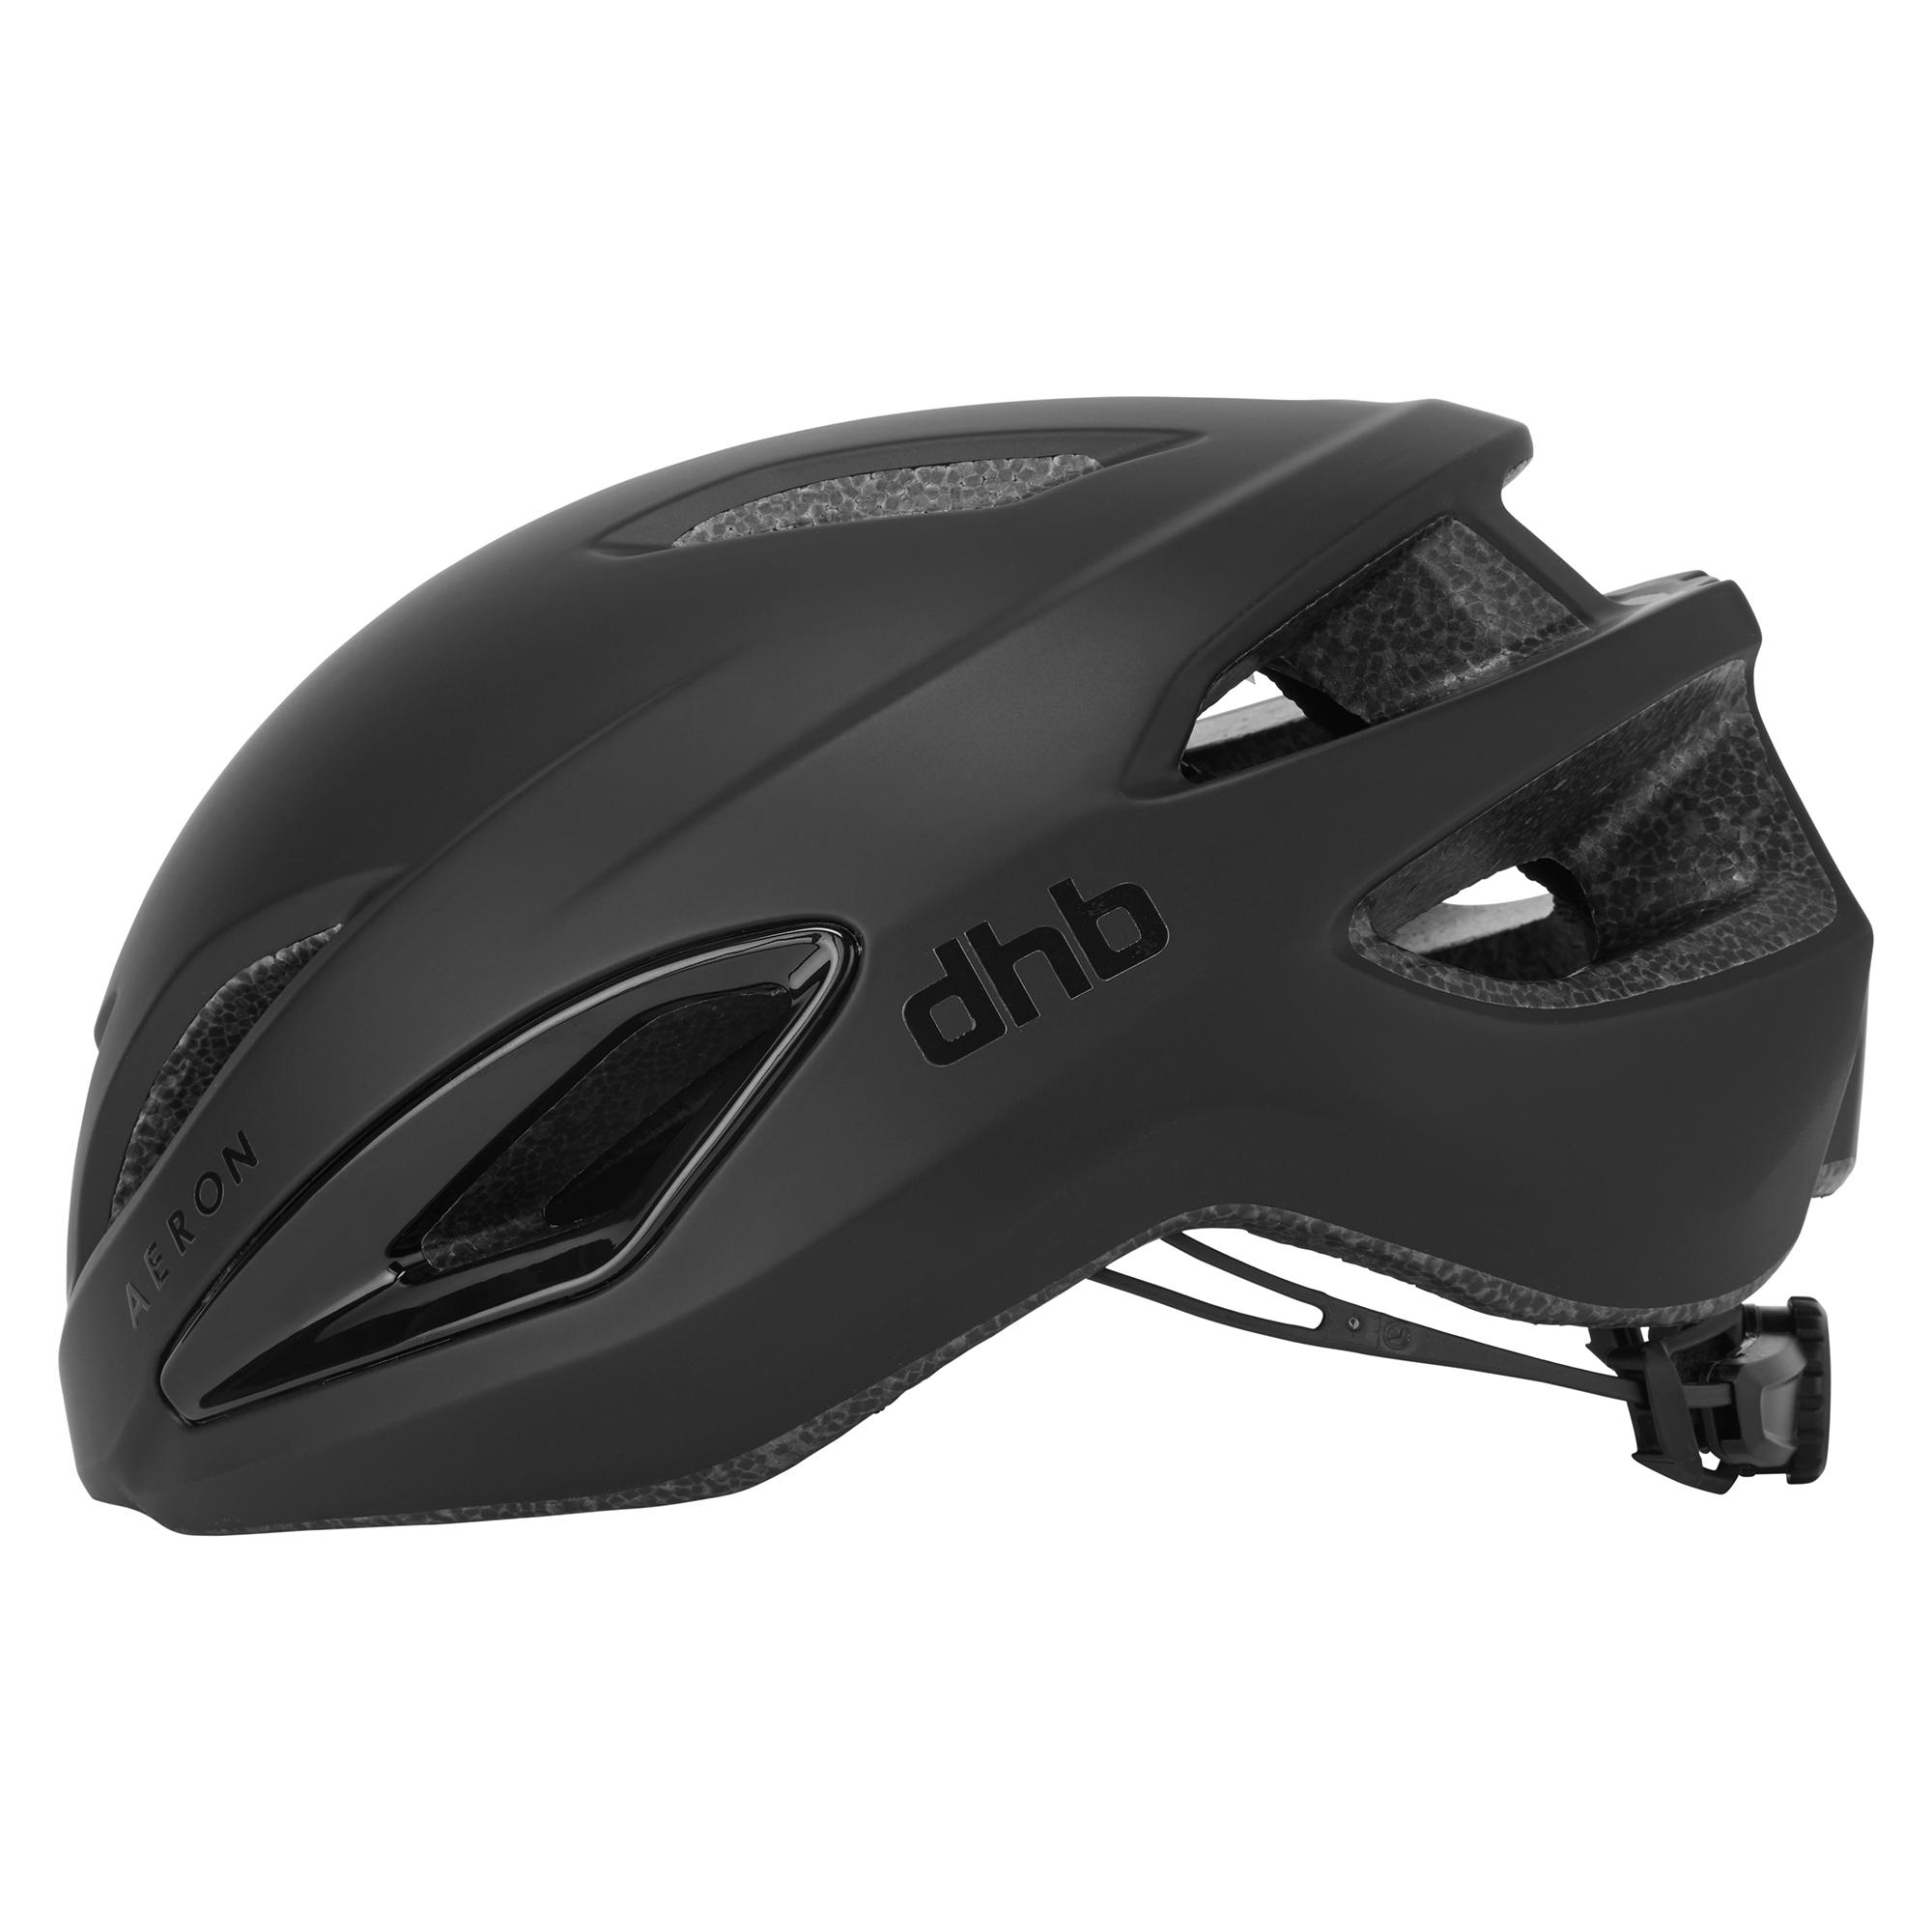 Dhb Aeron Helmet - Black